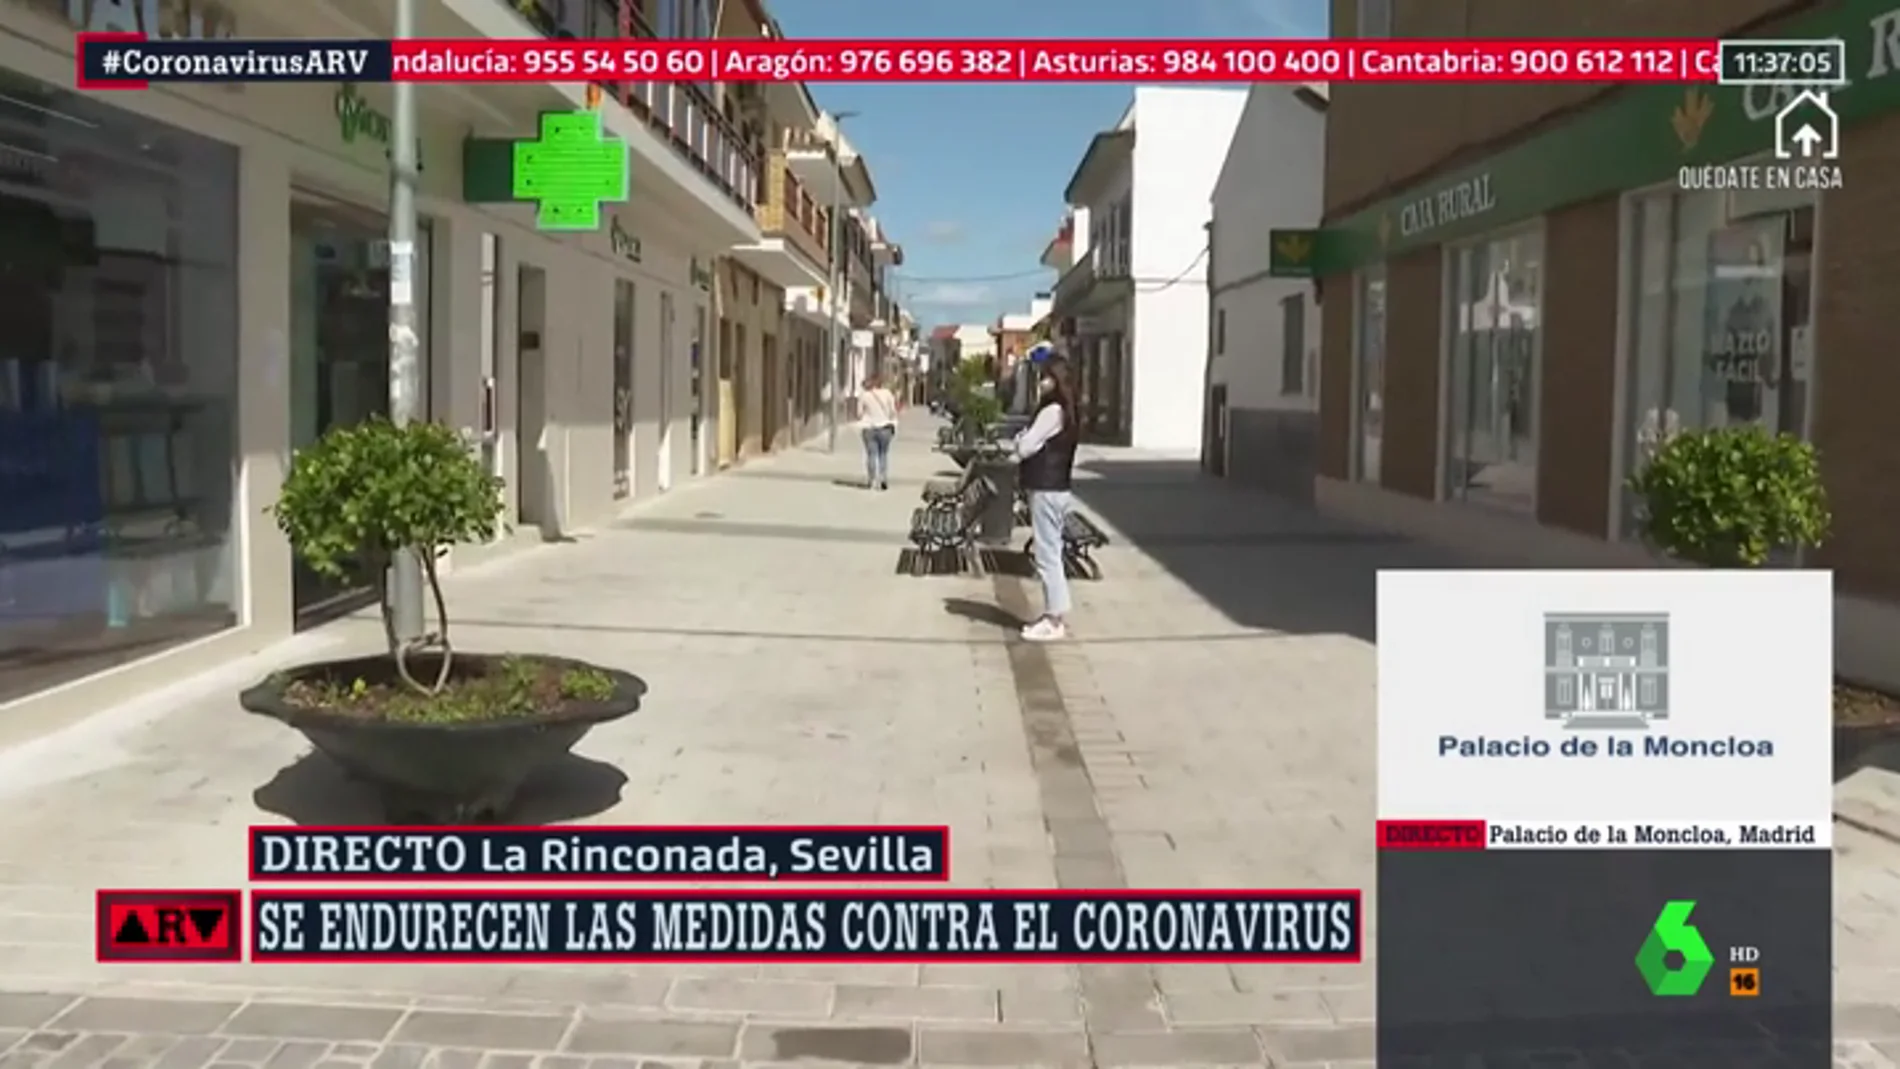 Hacer la compra por turnos: la propuesta del Ayuntamiento de La Rinconada (Sevilla) para reducir el riesgo de contagio